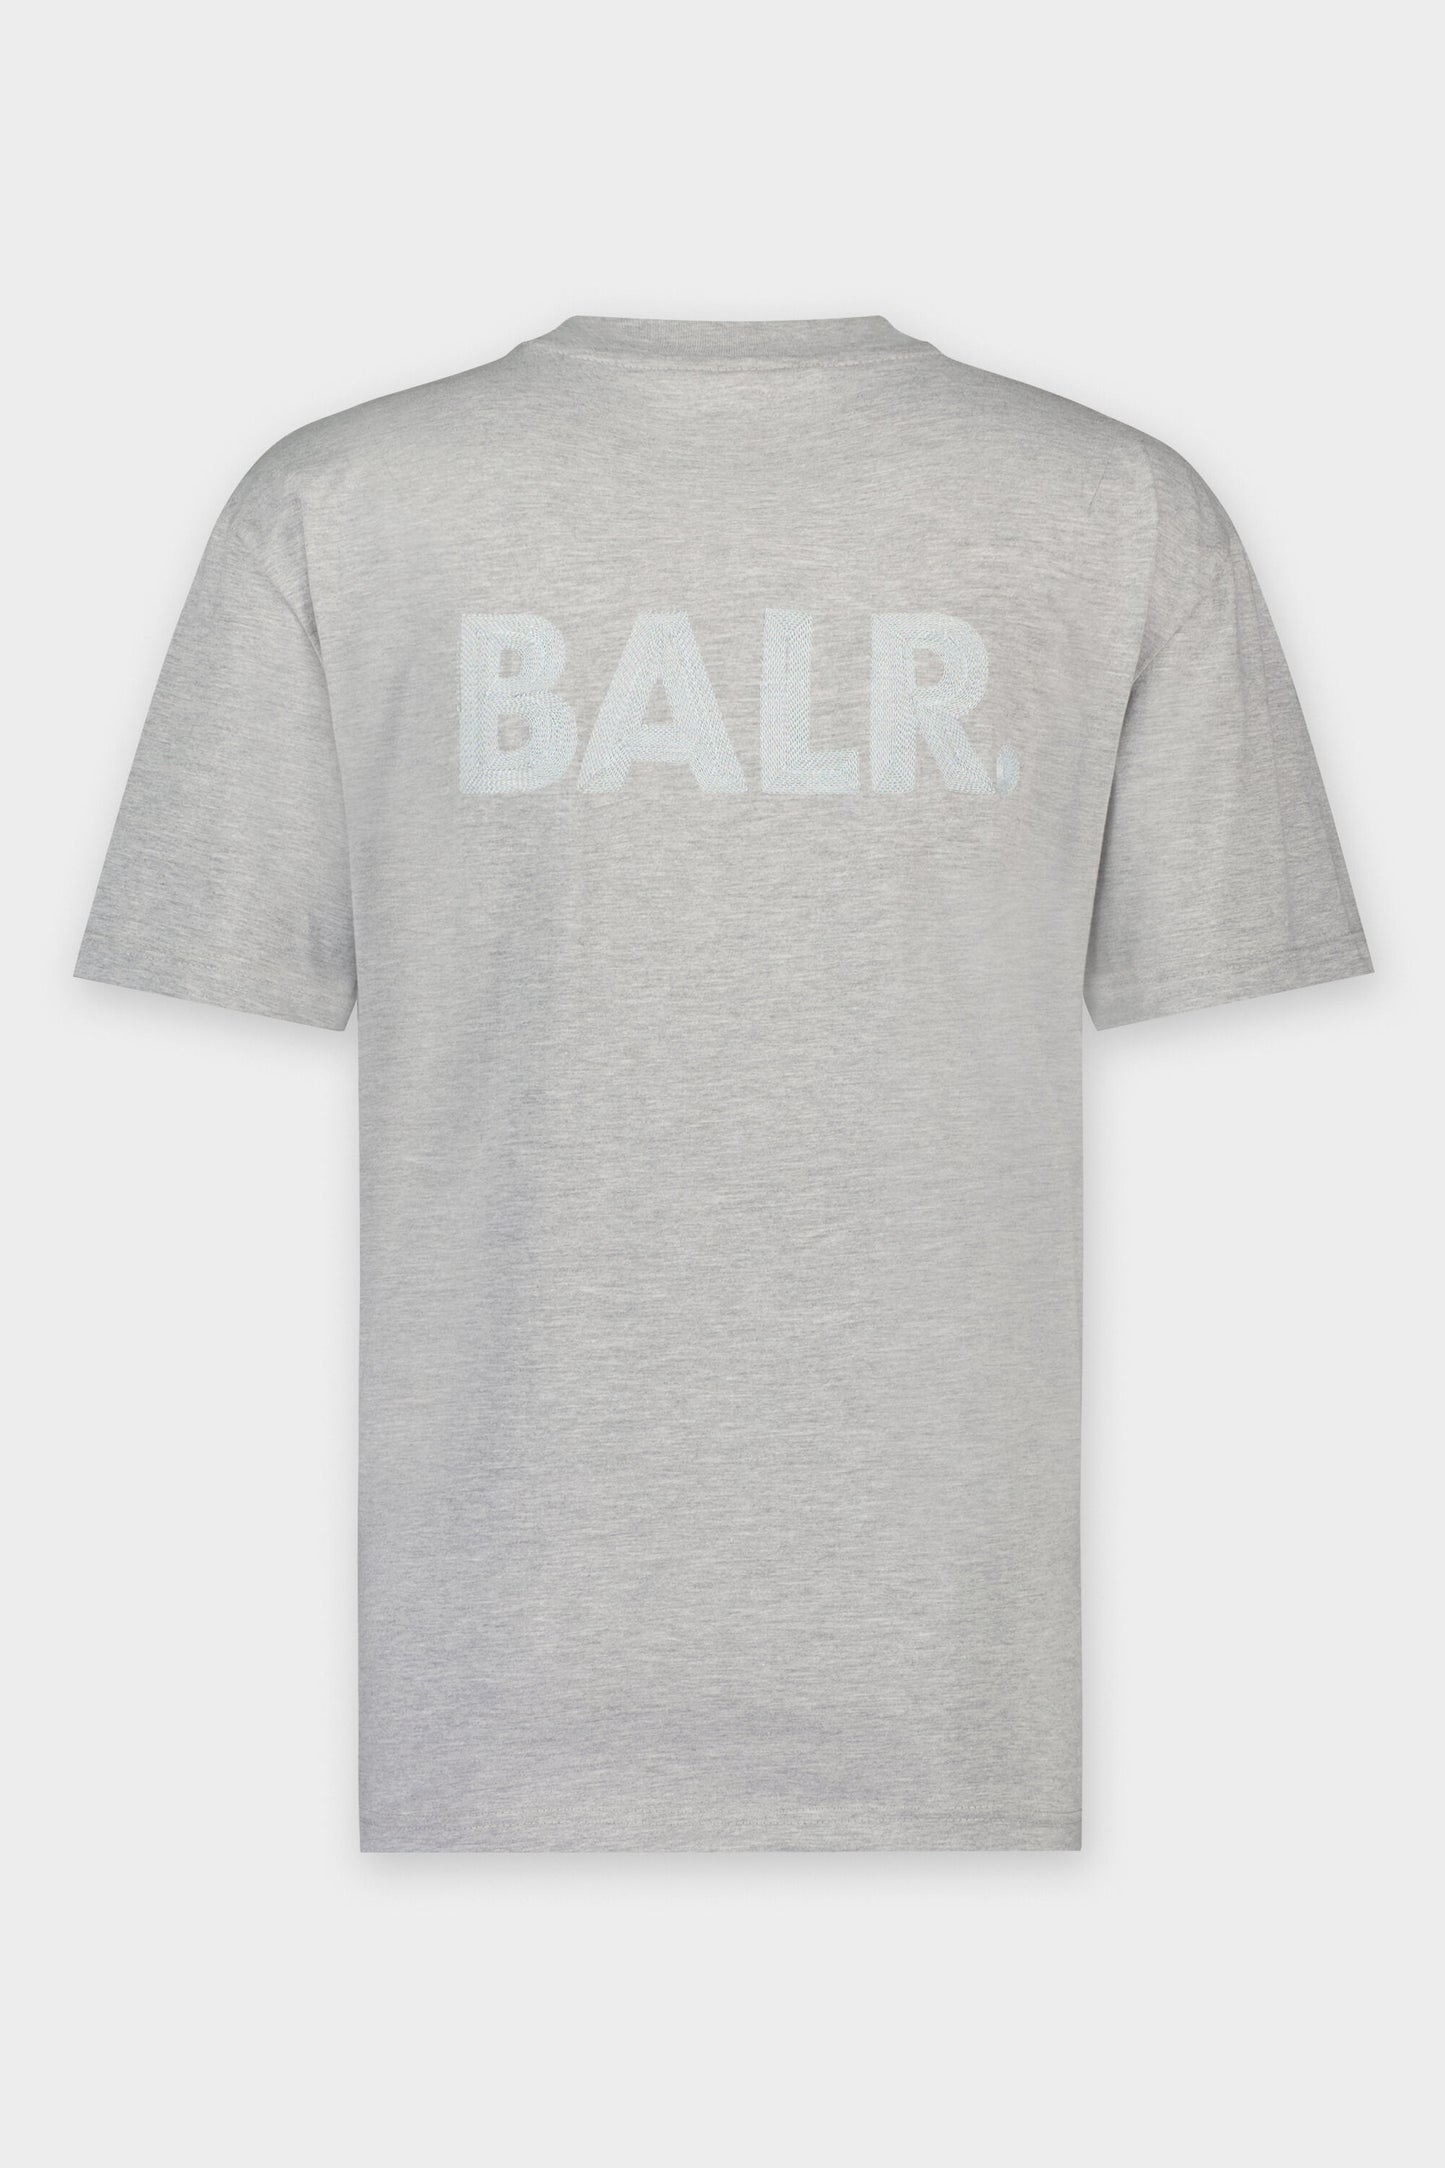 Luke Box Dart BALR. Logo T-Shirt Grey Heather